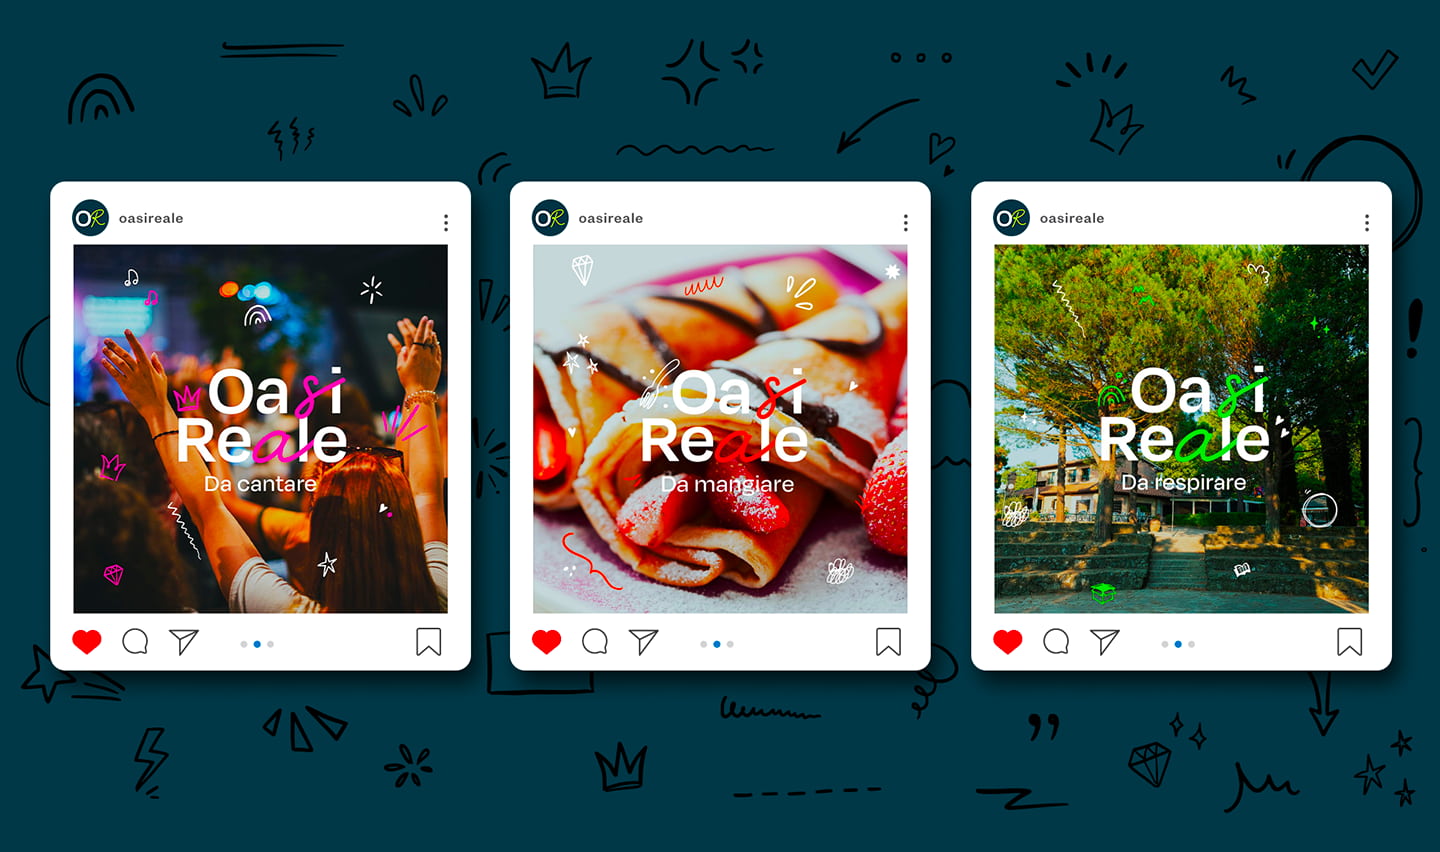 immagine con 3 esempi di post instagram creati per la brand identity di oasi reale